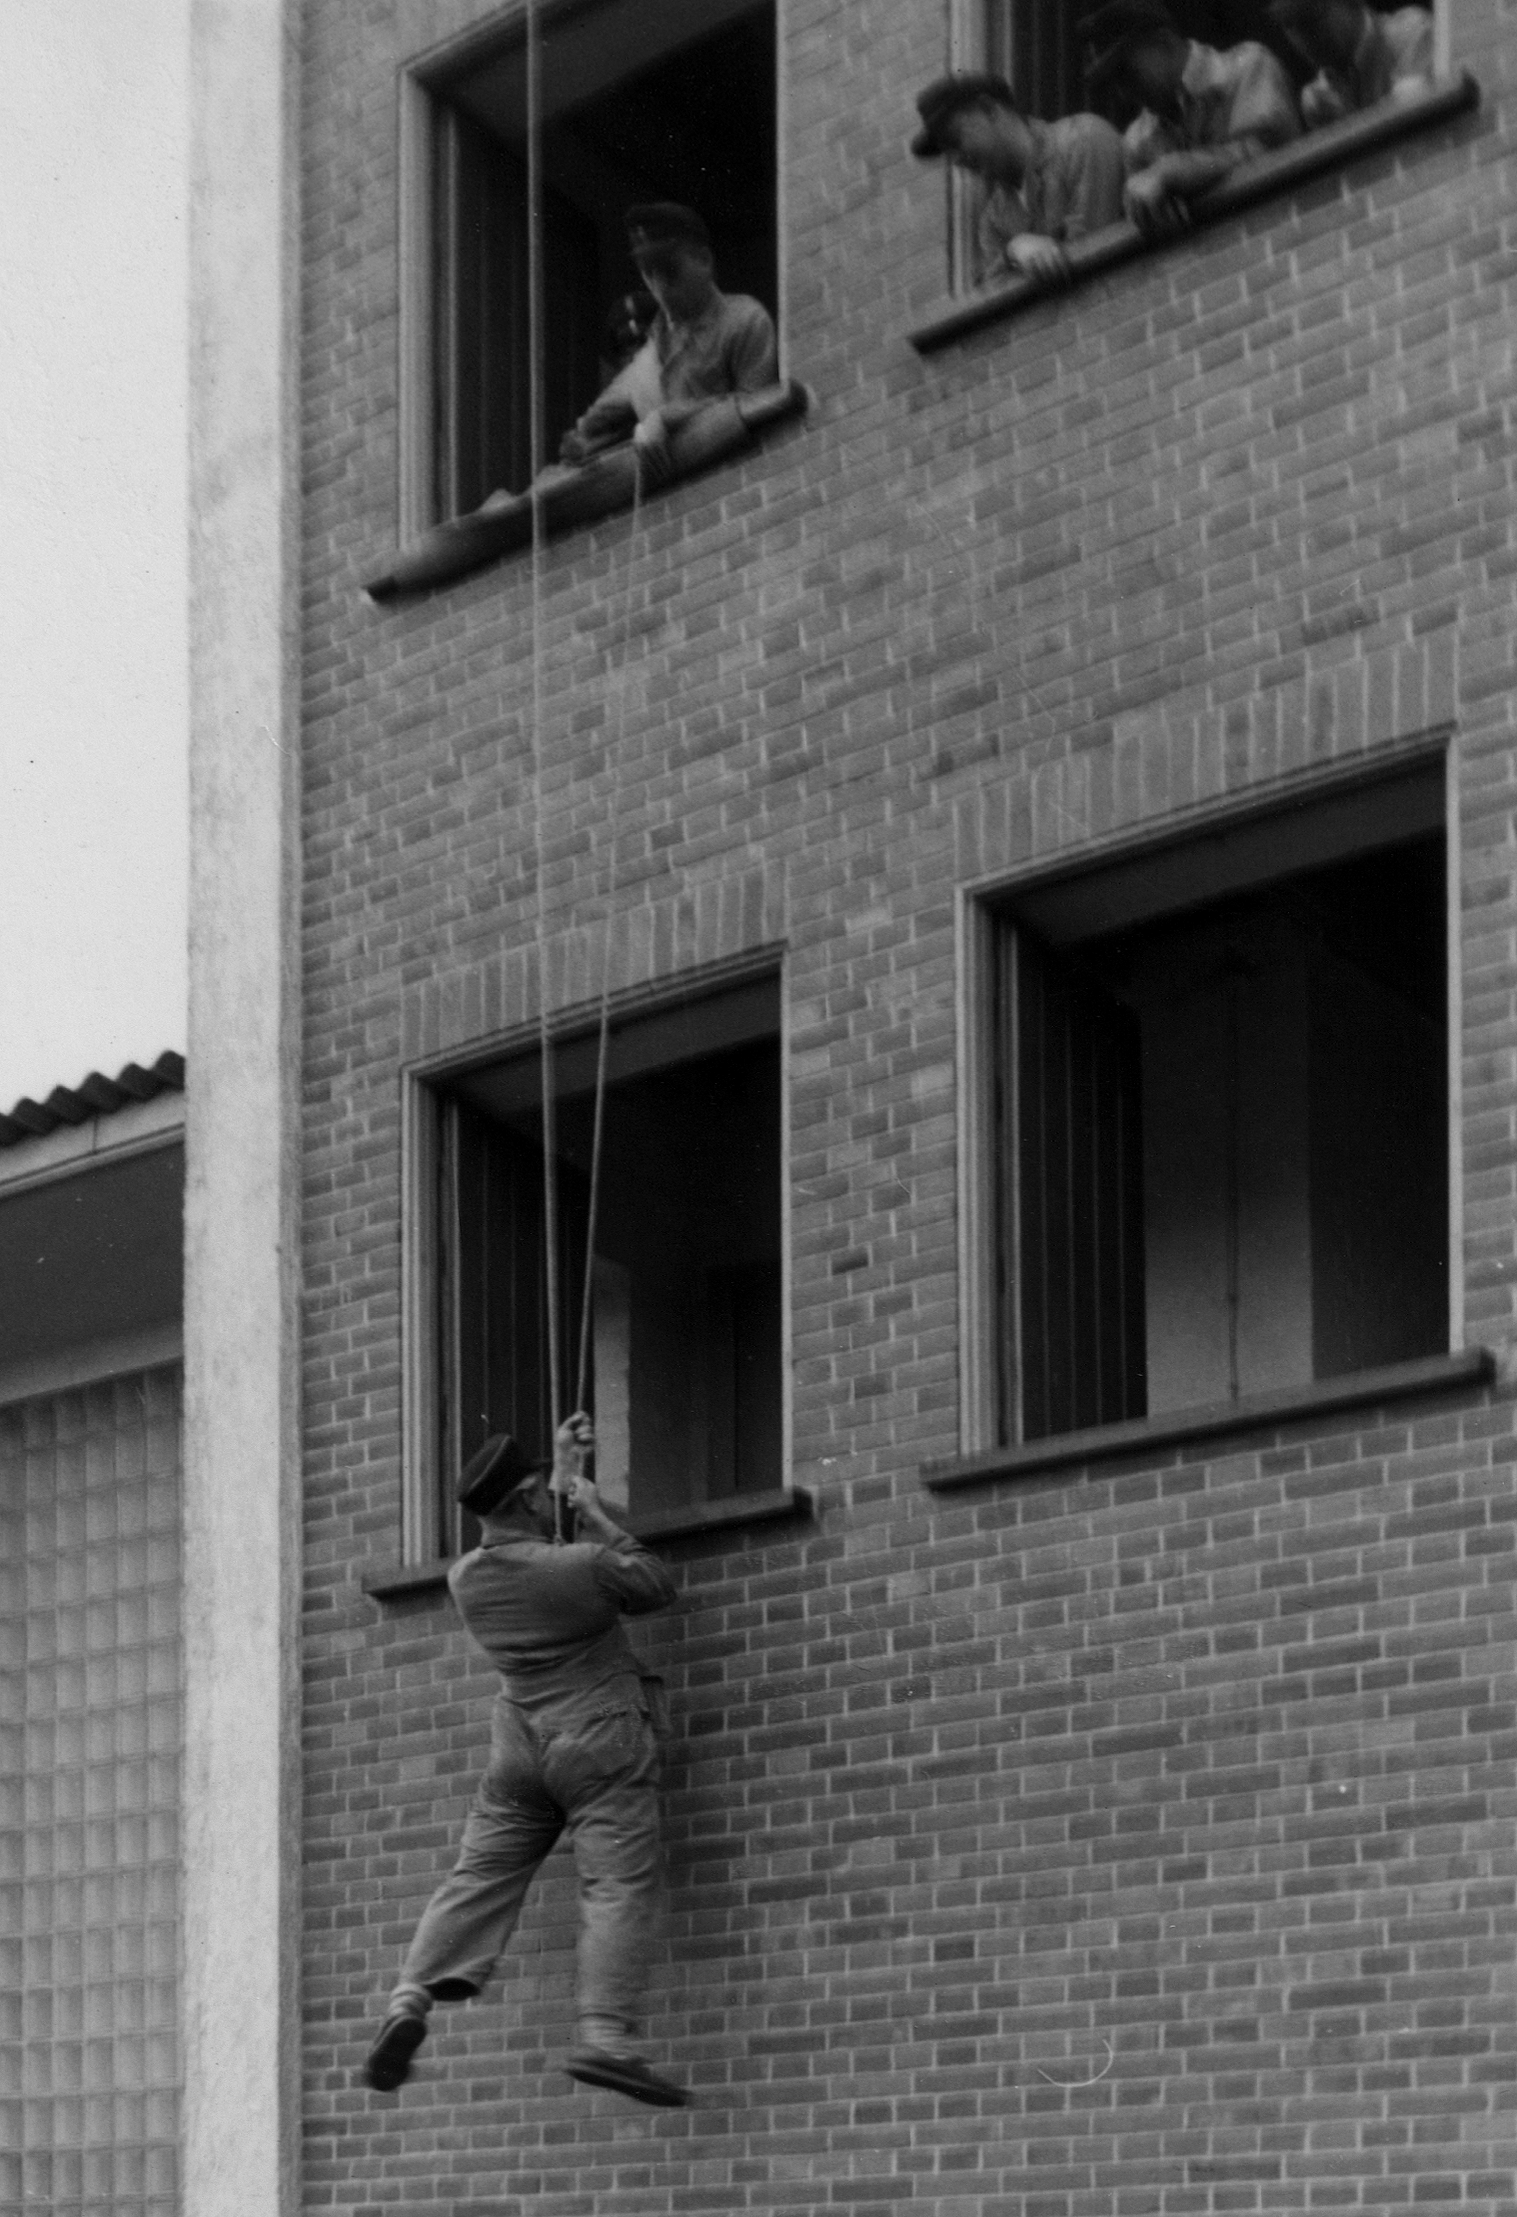 Feuerwehr Königstädten - Brandmeisterlehrgang - Kassel 1962 - Abseilen an der Hauswand